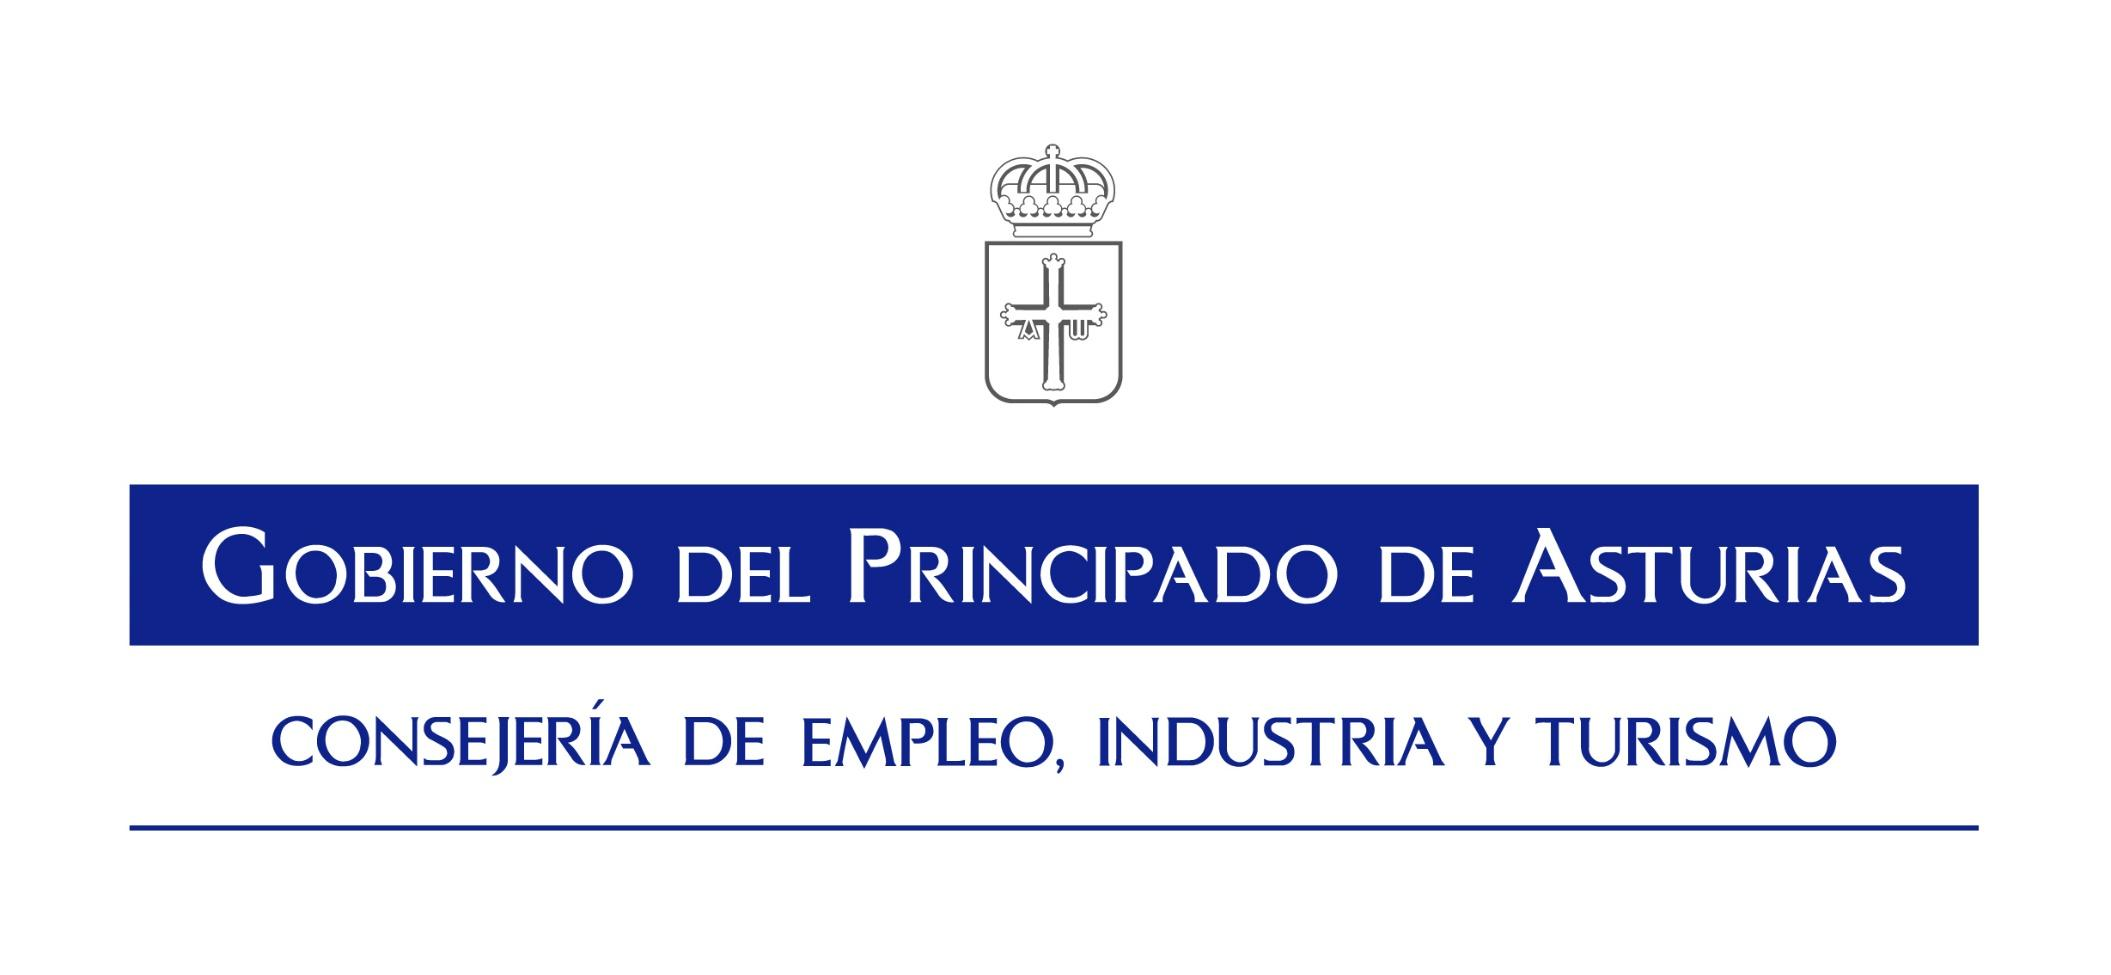 Jornada sobre Ayudas I+D+i empresarial en el Principado de Asturias